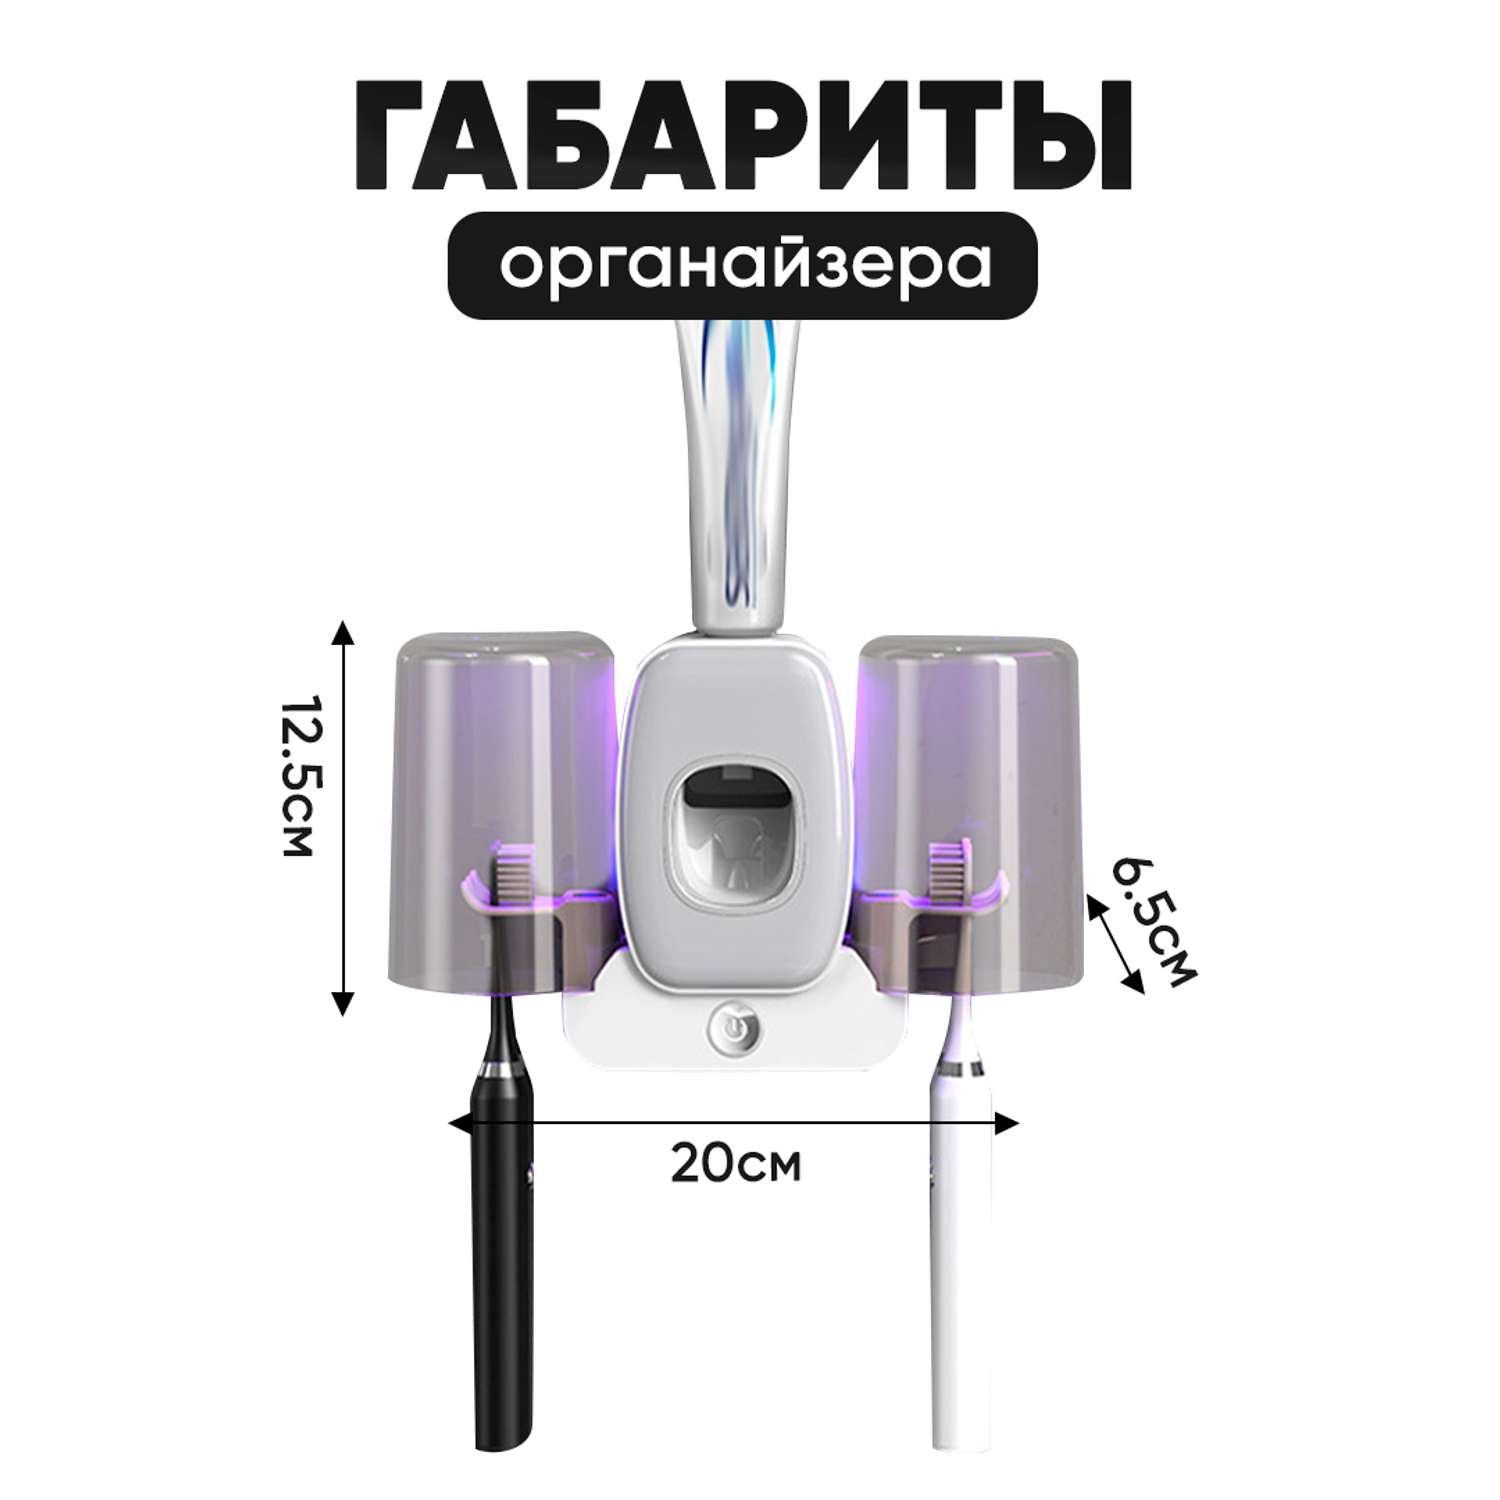 Дозаторы для ванной комнаты oqqi уф стерилизатор для зубных щеток - фото 8